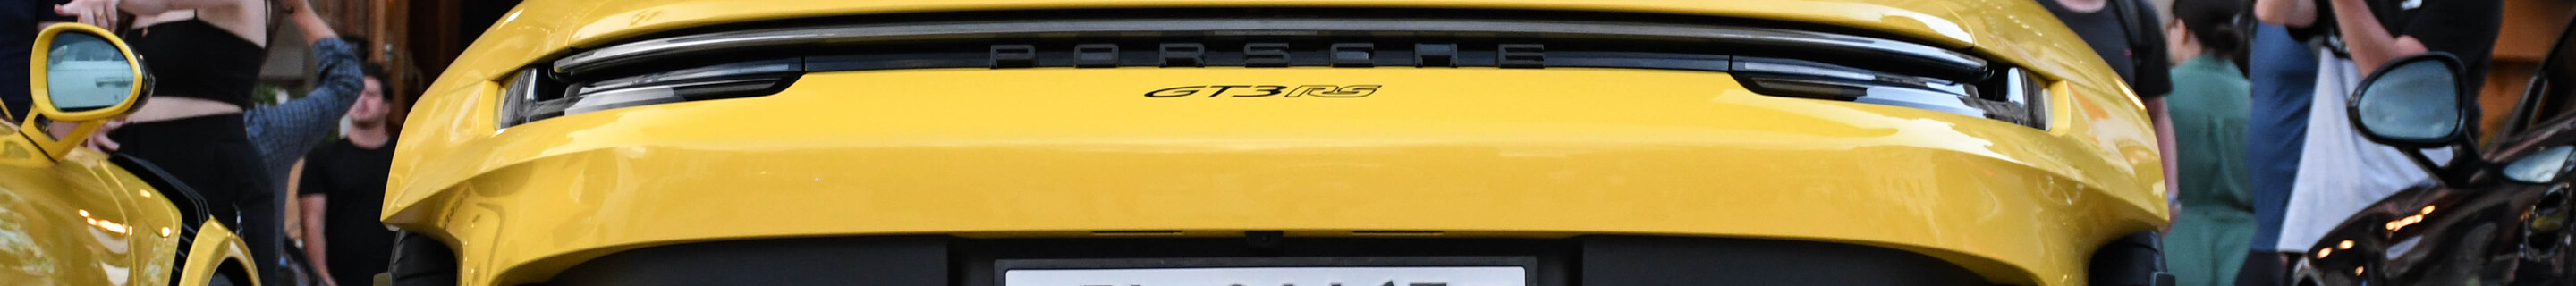 Porsche 992 GT3 RS Weissach Package